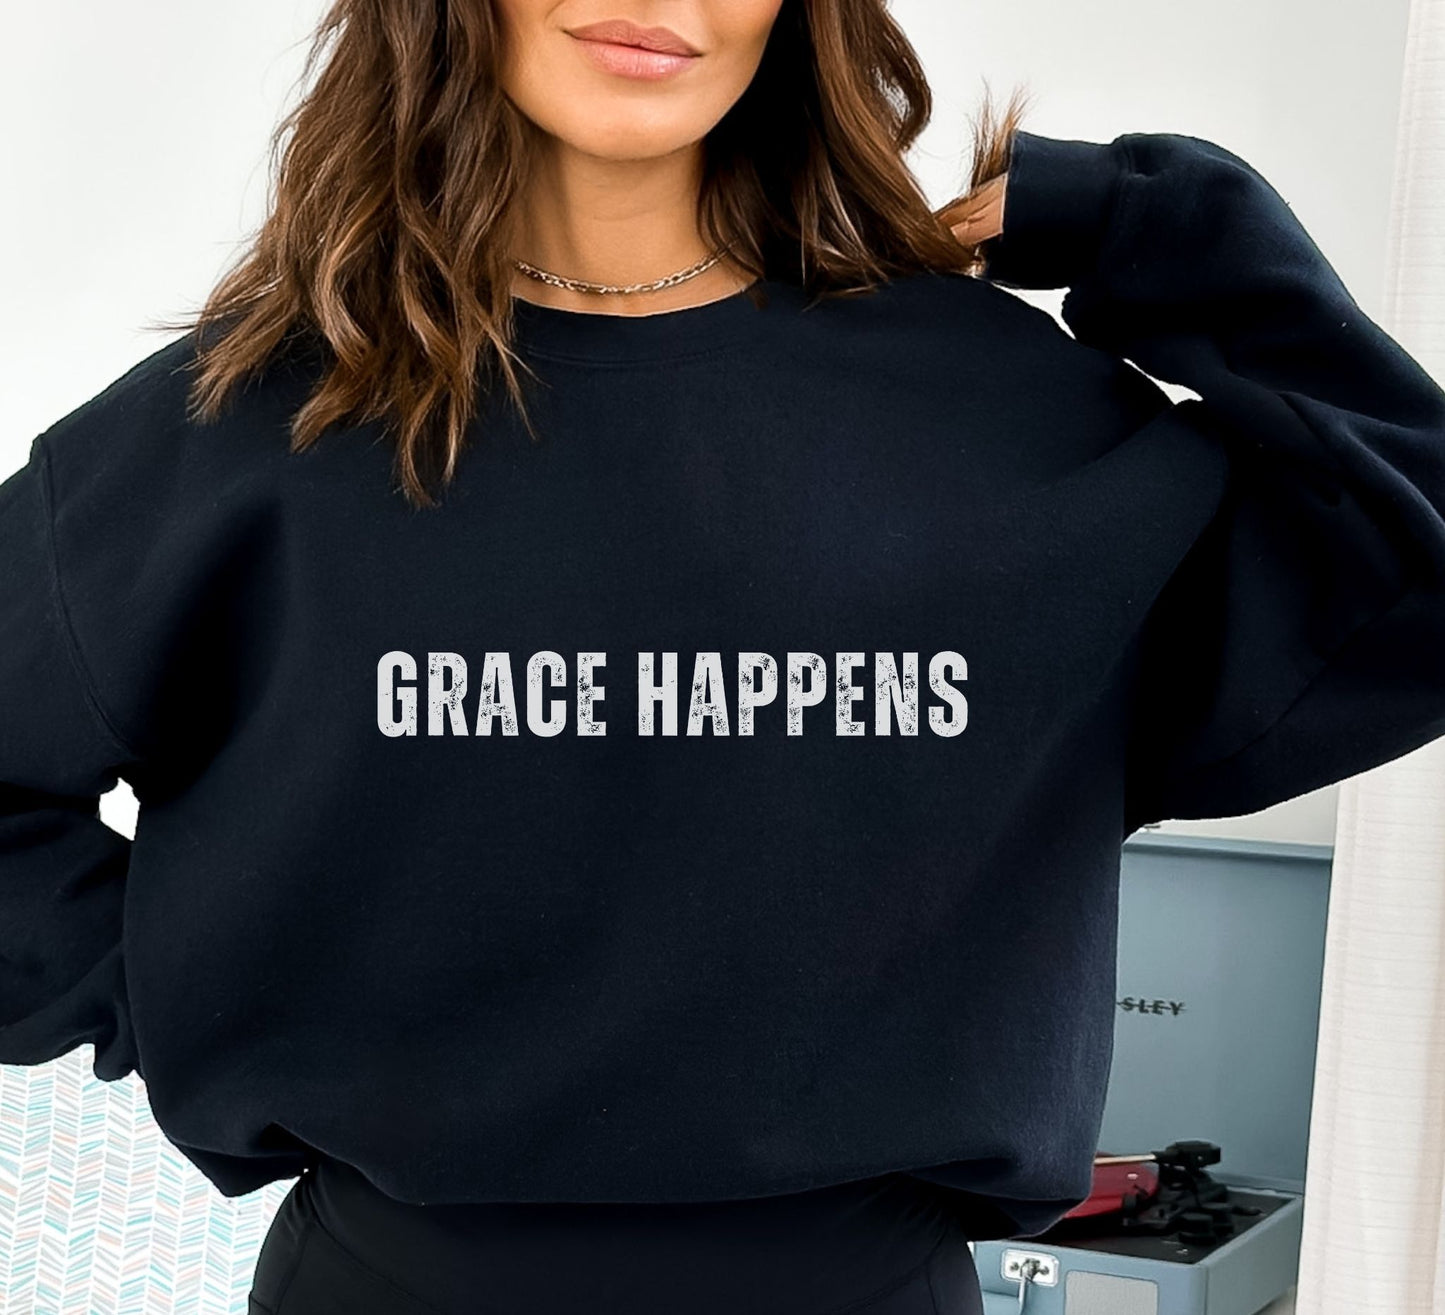 Grace Happens Sweatshirt - Halleluiah!